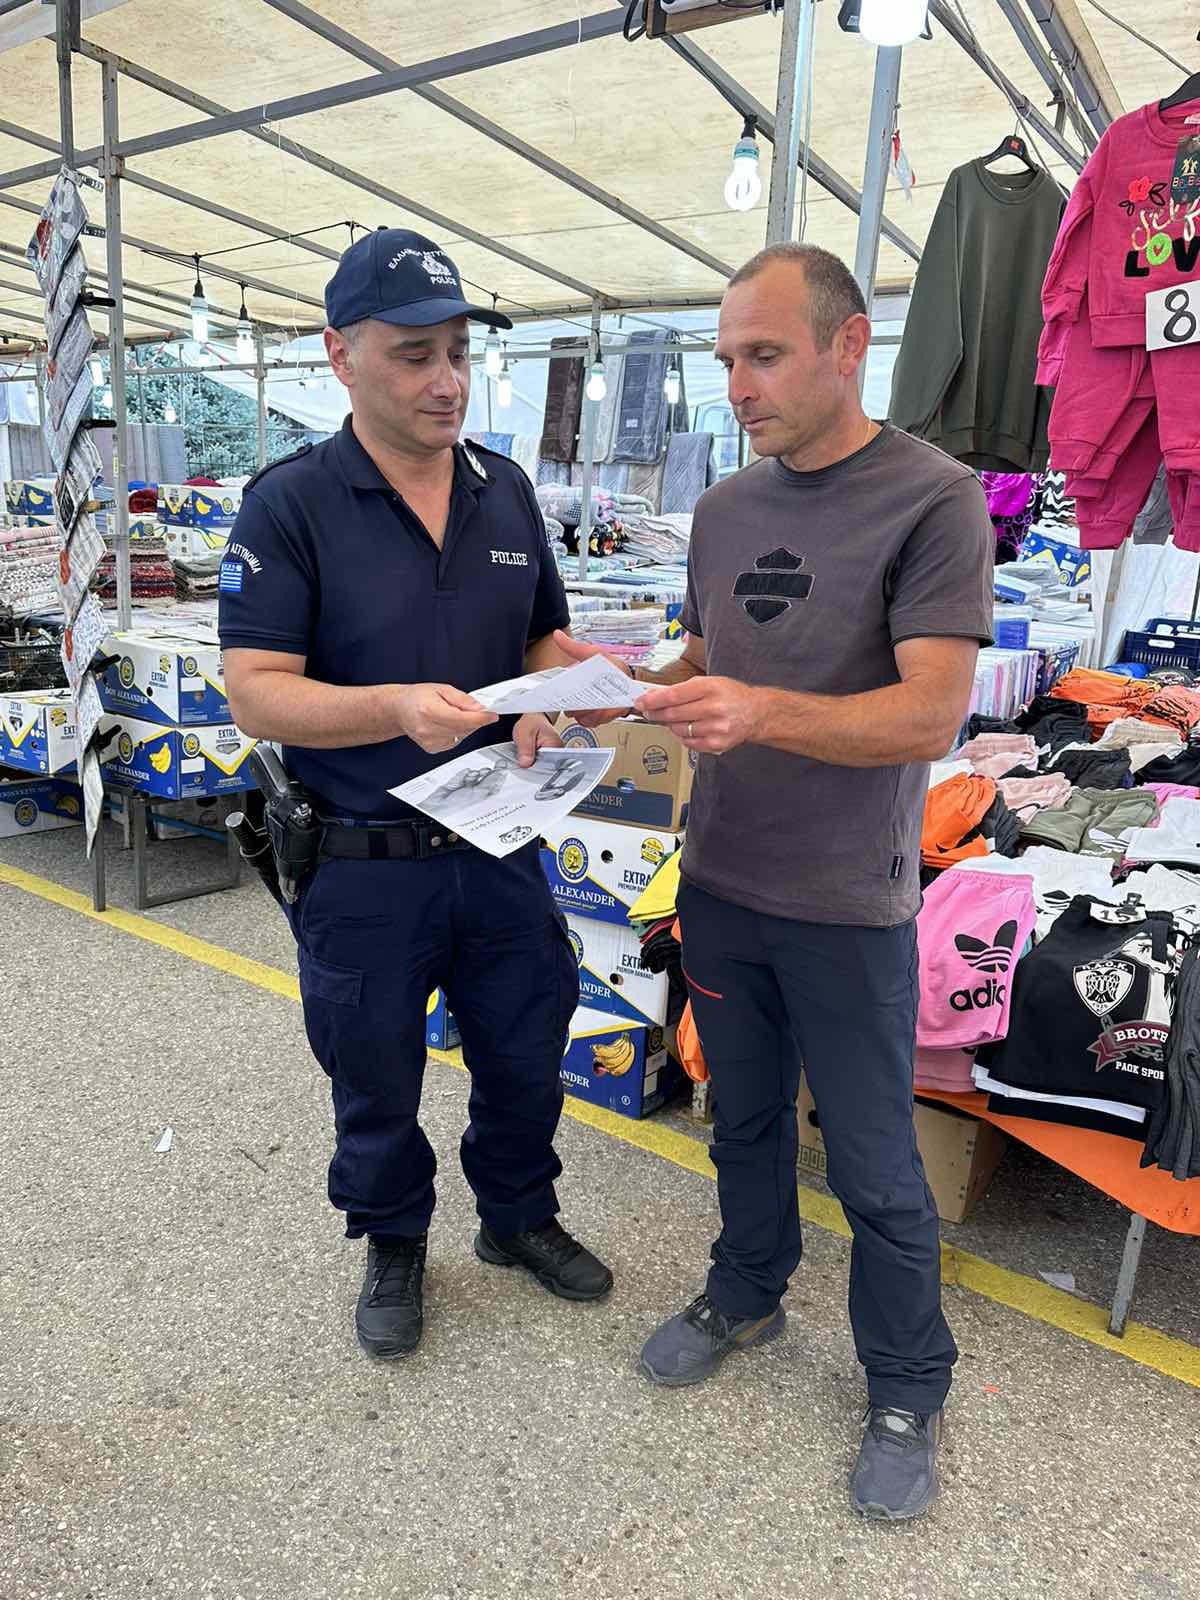 Στοχευμένοι έλεγχοι της Διεύθυνσης Αστυνομίας Καστοριάς σε θέματα Τάξης και Ασφάλειας, στο πλαίσιο της ετήσιας εμποροπανήγυρης του Δήμου Άργους Ορεστικού